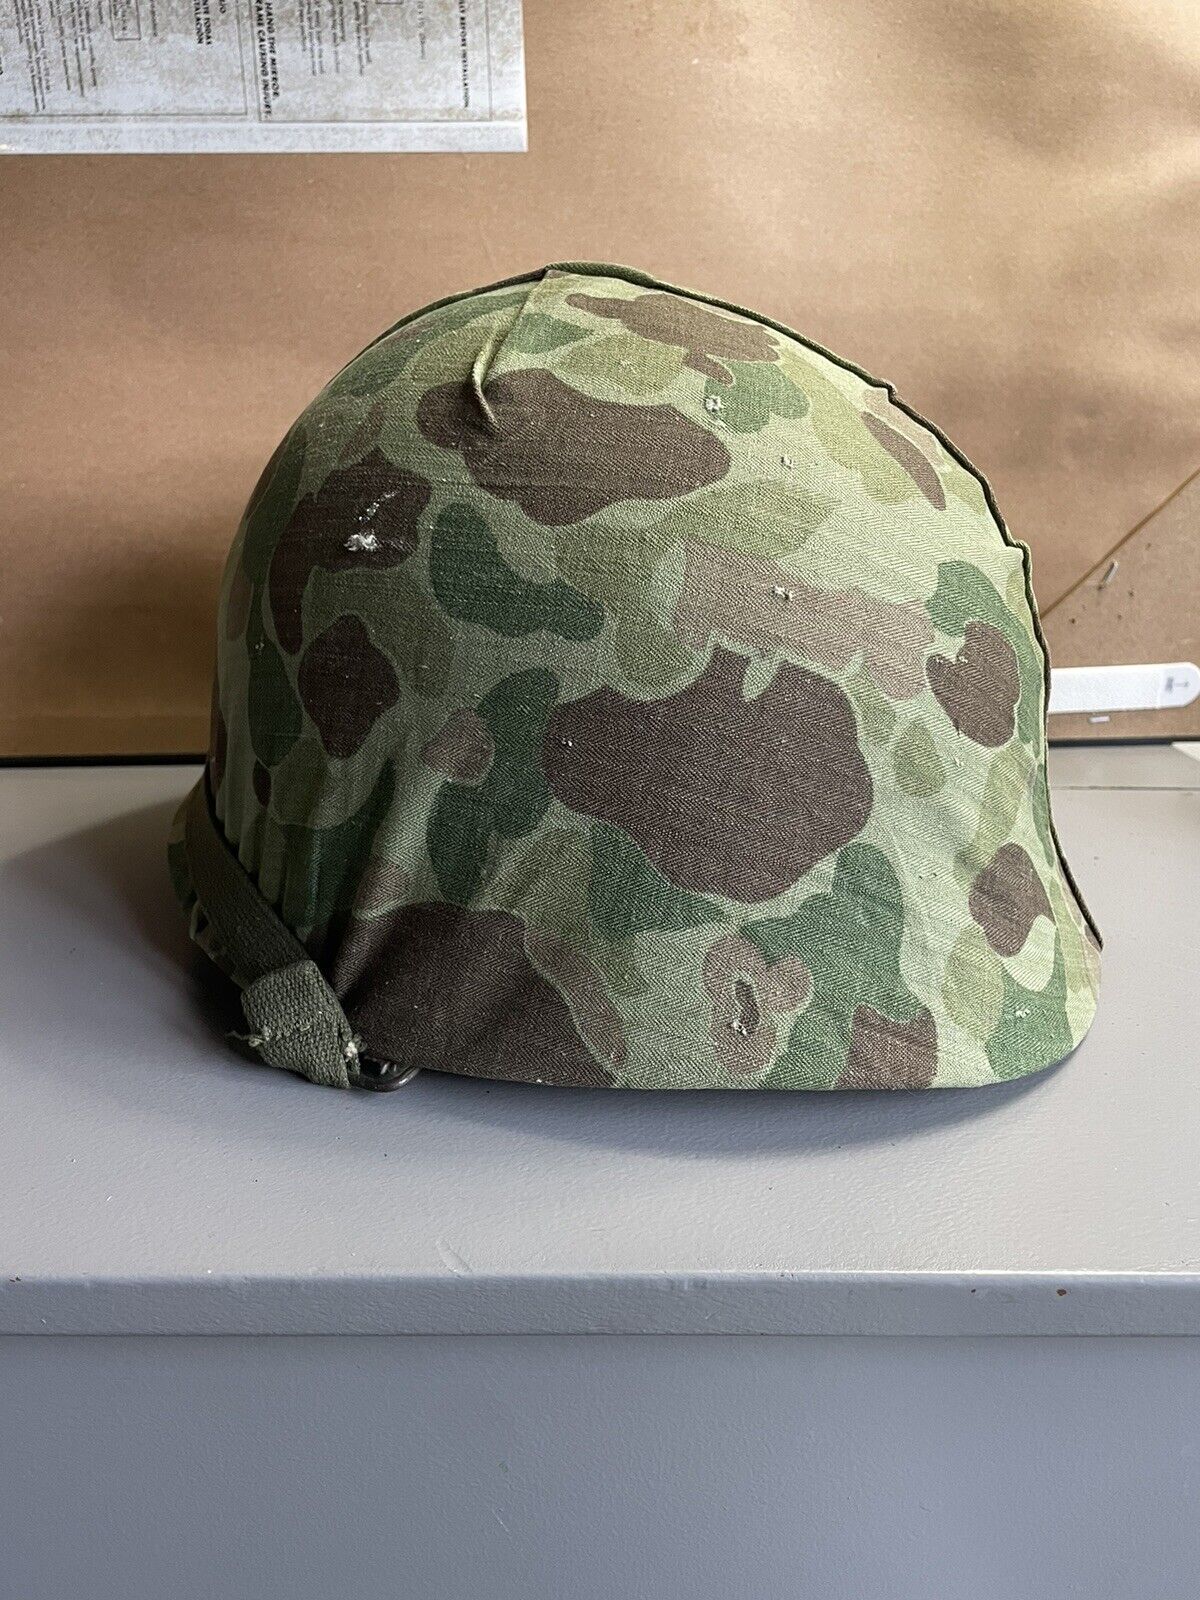 WW2 Korea USMC helmet and Cover